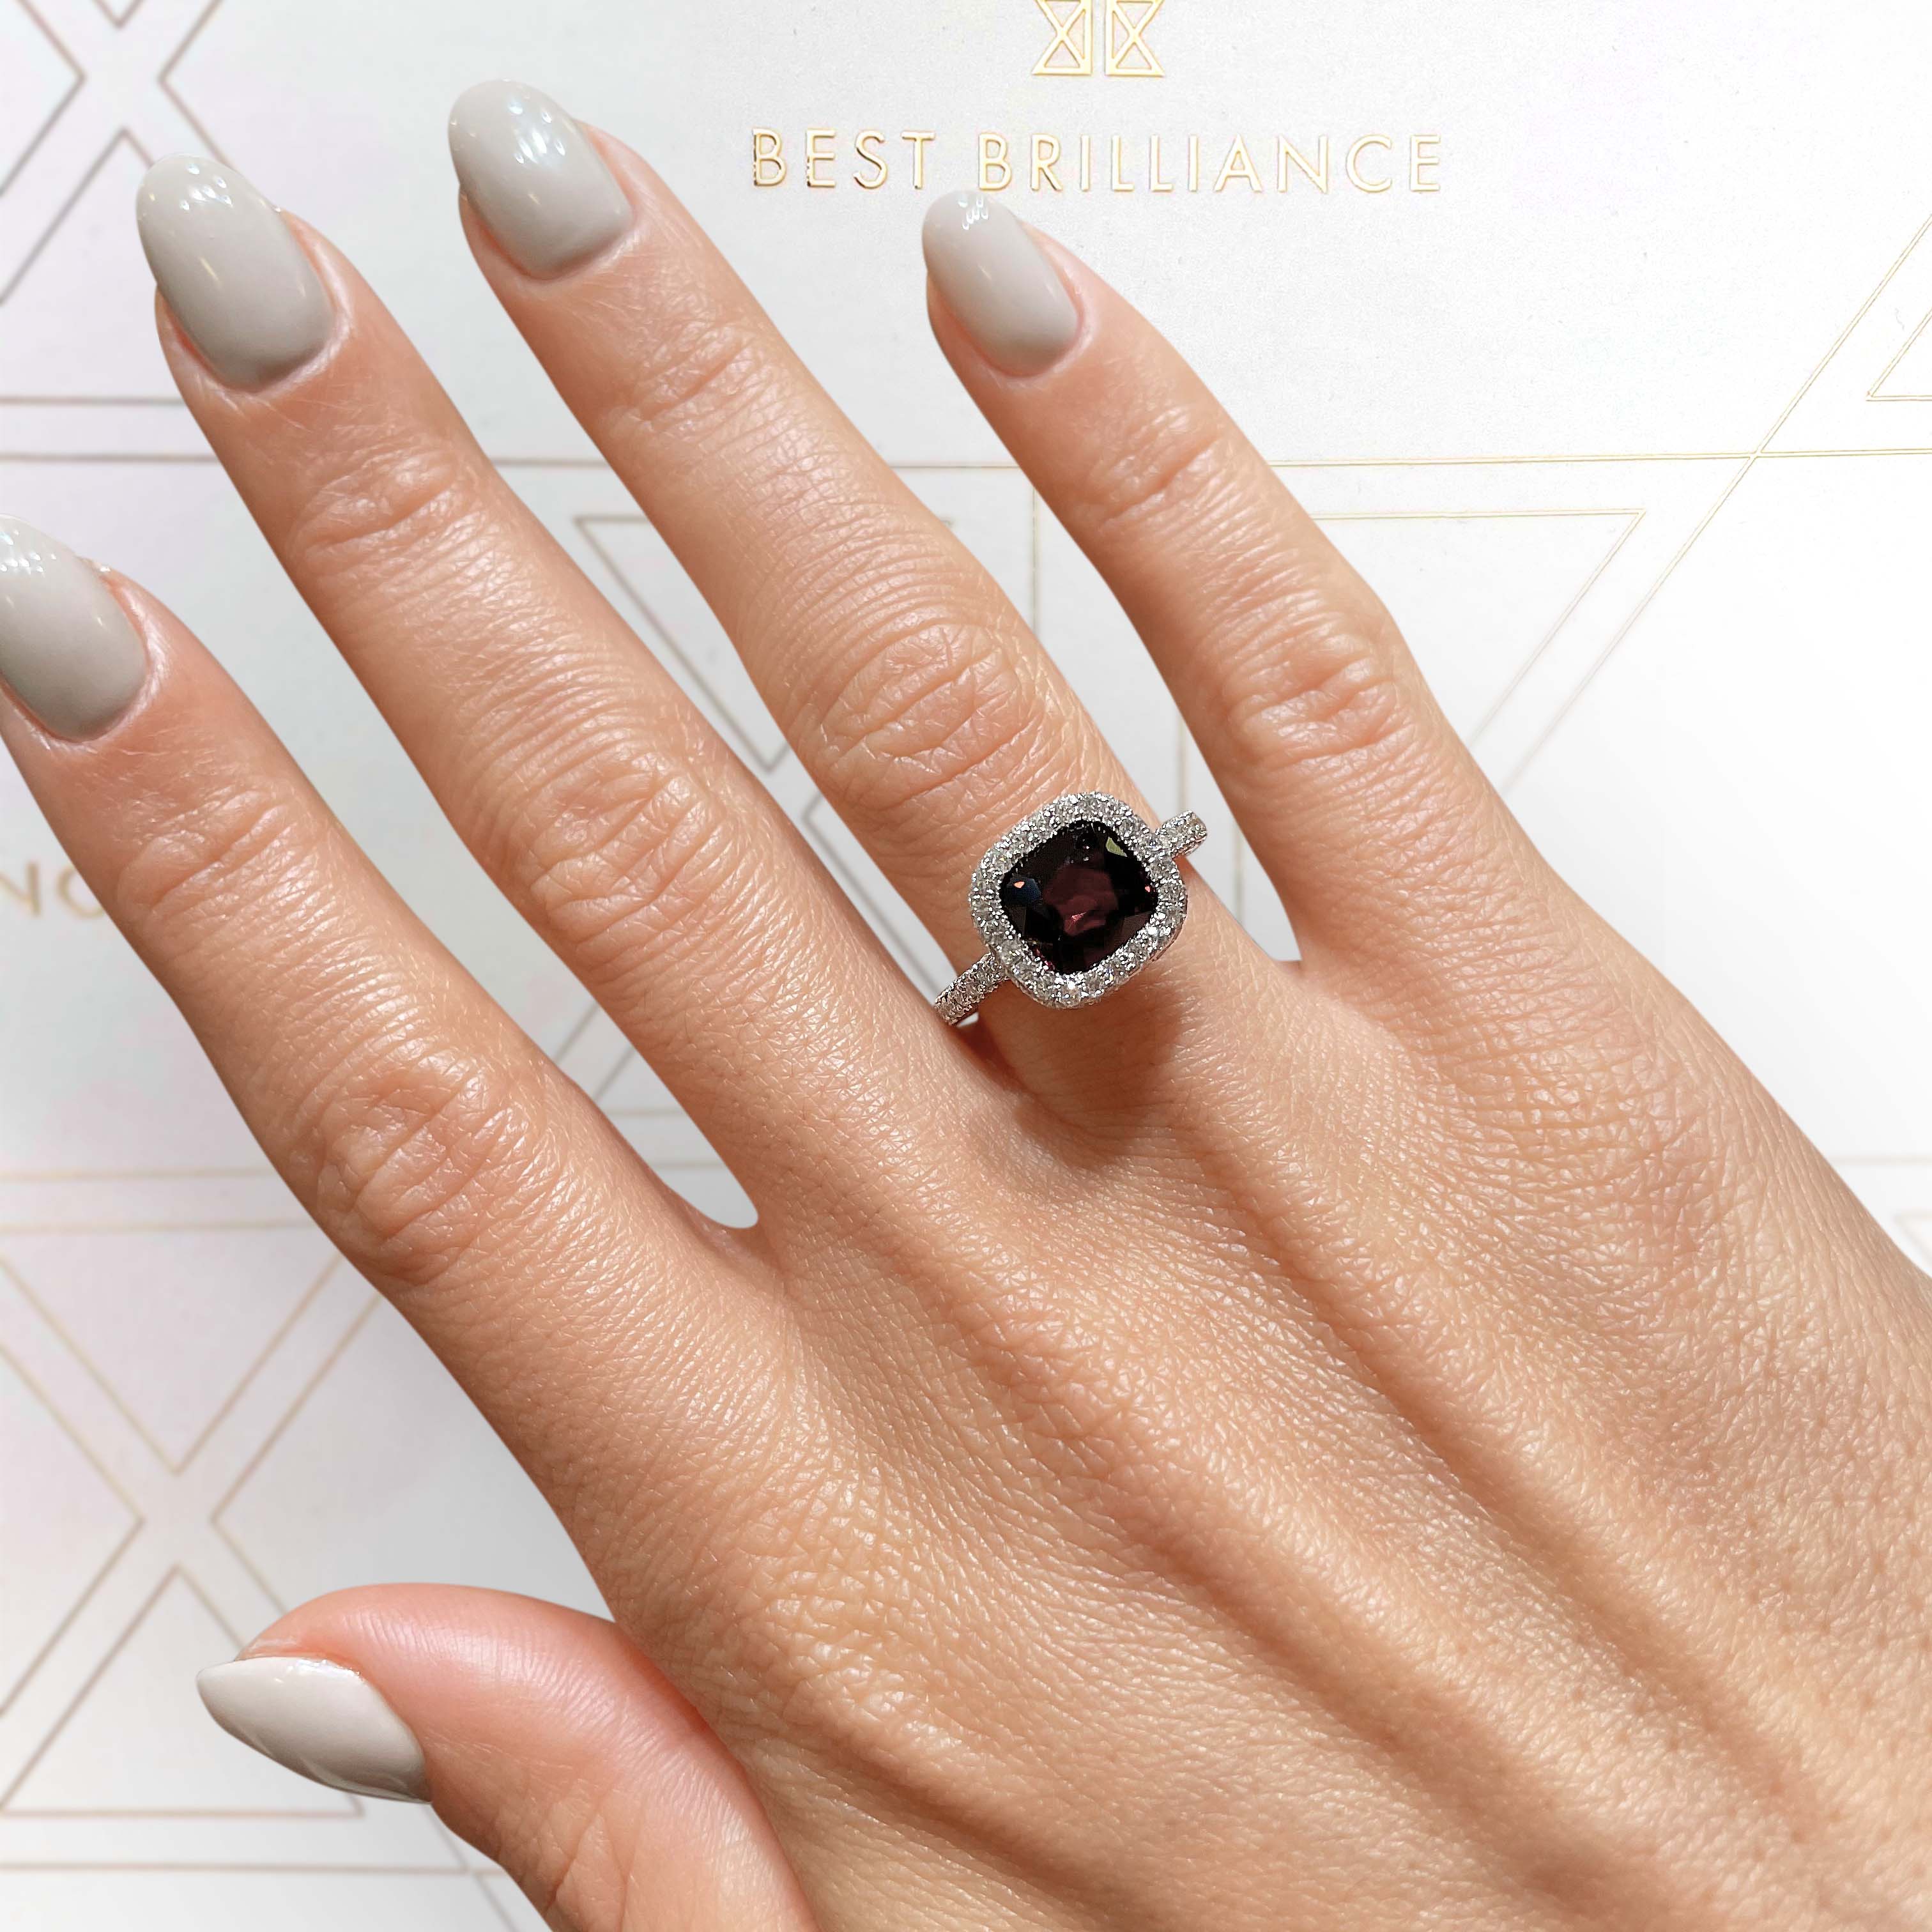 Kim Gemstone & Diamonds Ring   (4 Carat) -18K White Gold